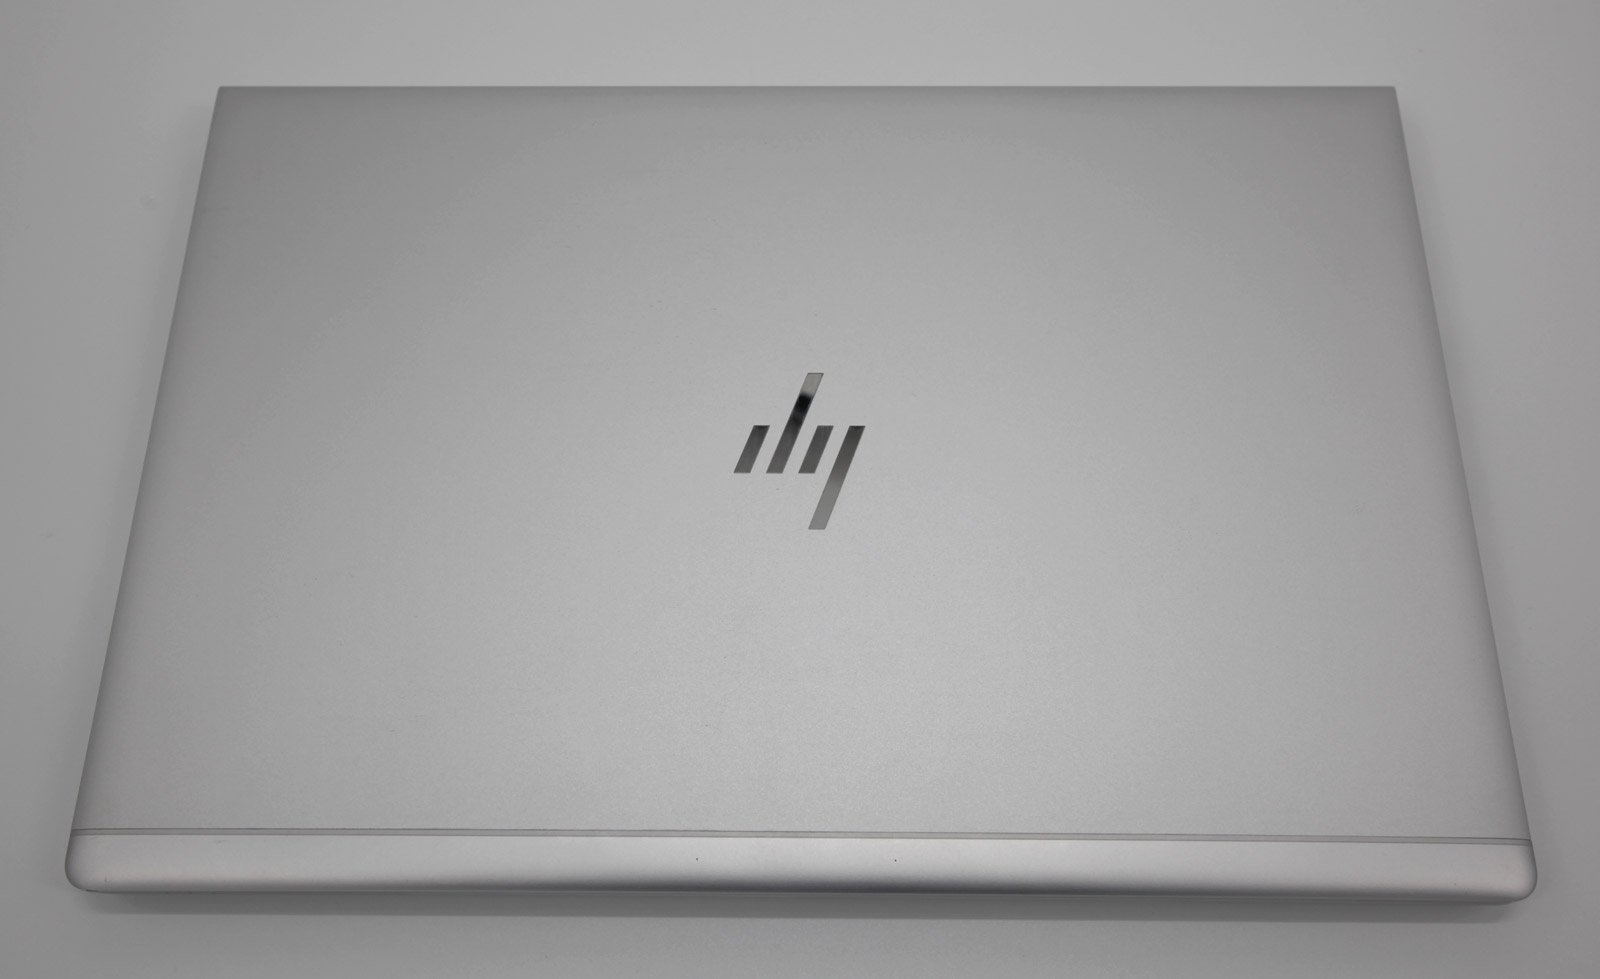 HP EliteBook 850 G5 15.6" Laptop: 8th Gen Core i7, 16GB RAM, 512GB SSD, Warranty - CruiseTech